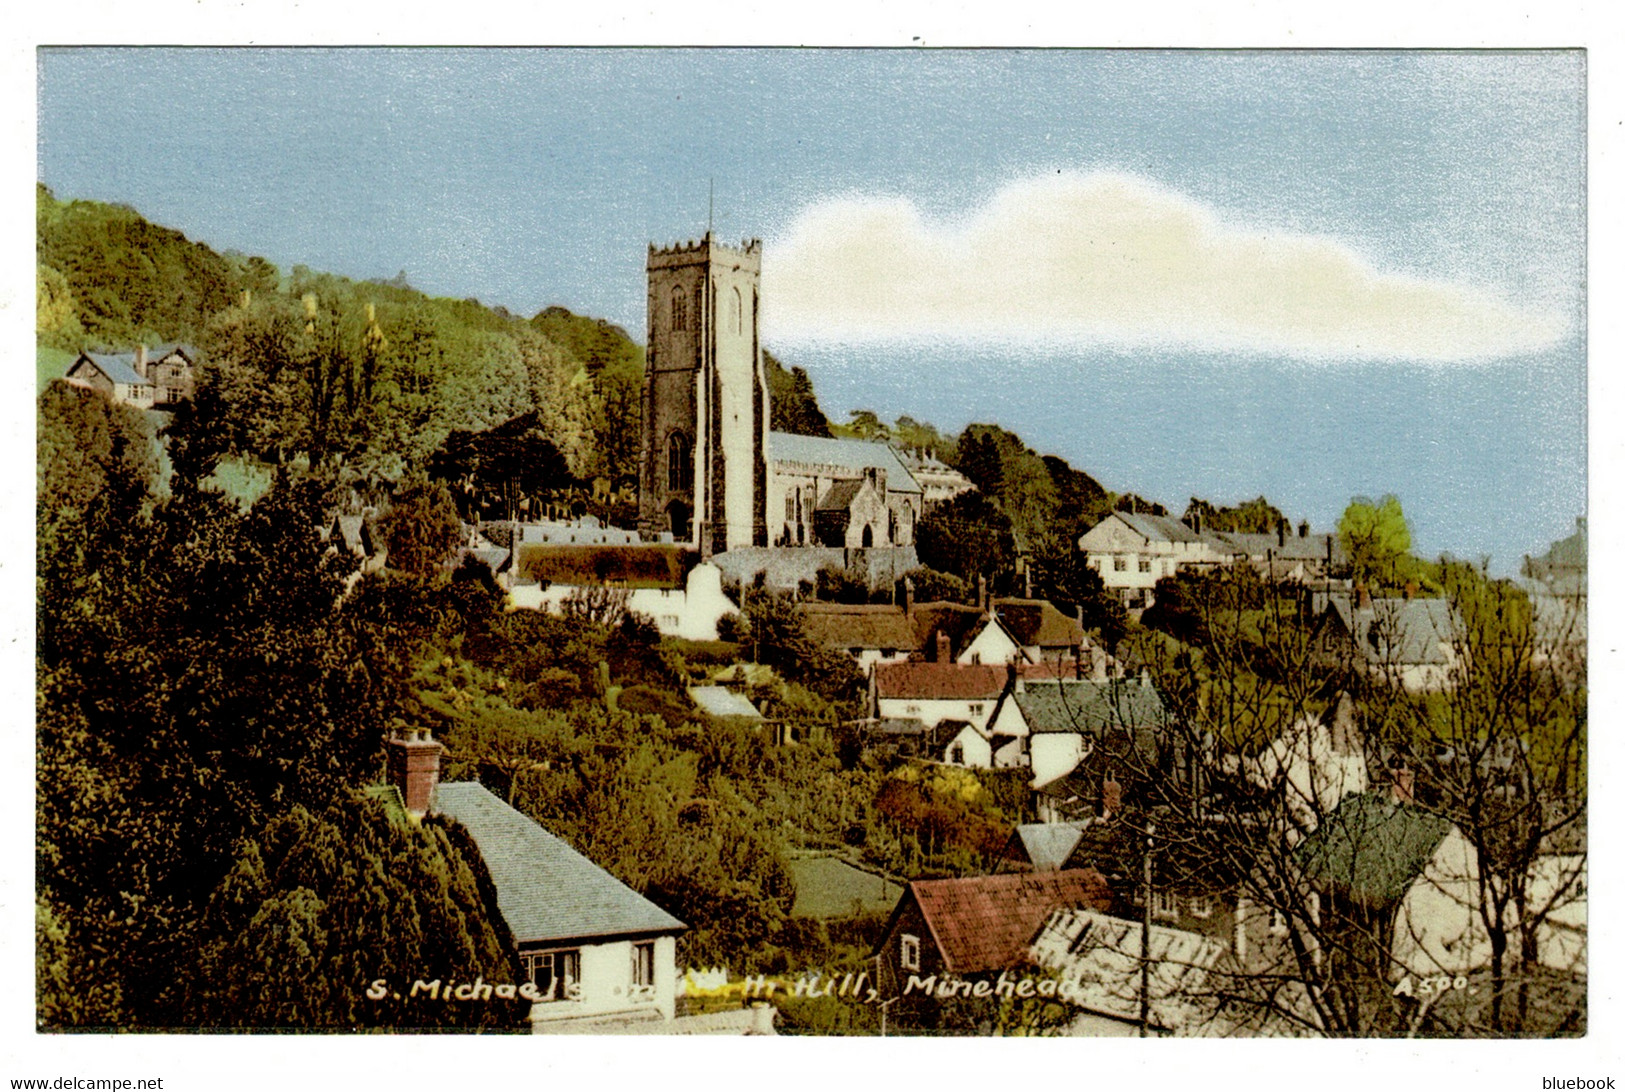 Ref 1499 - Postcard - St Michaels Church On North Hill - Minehead Somerset - Minehead